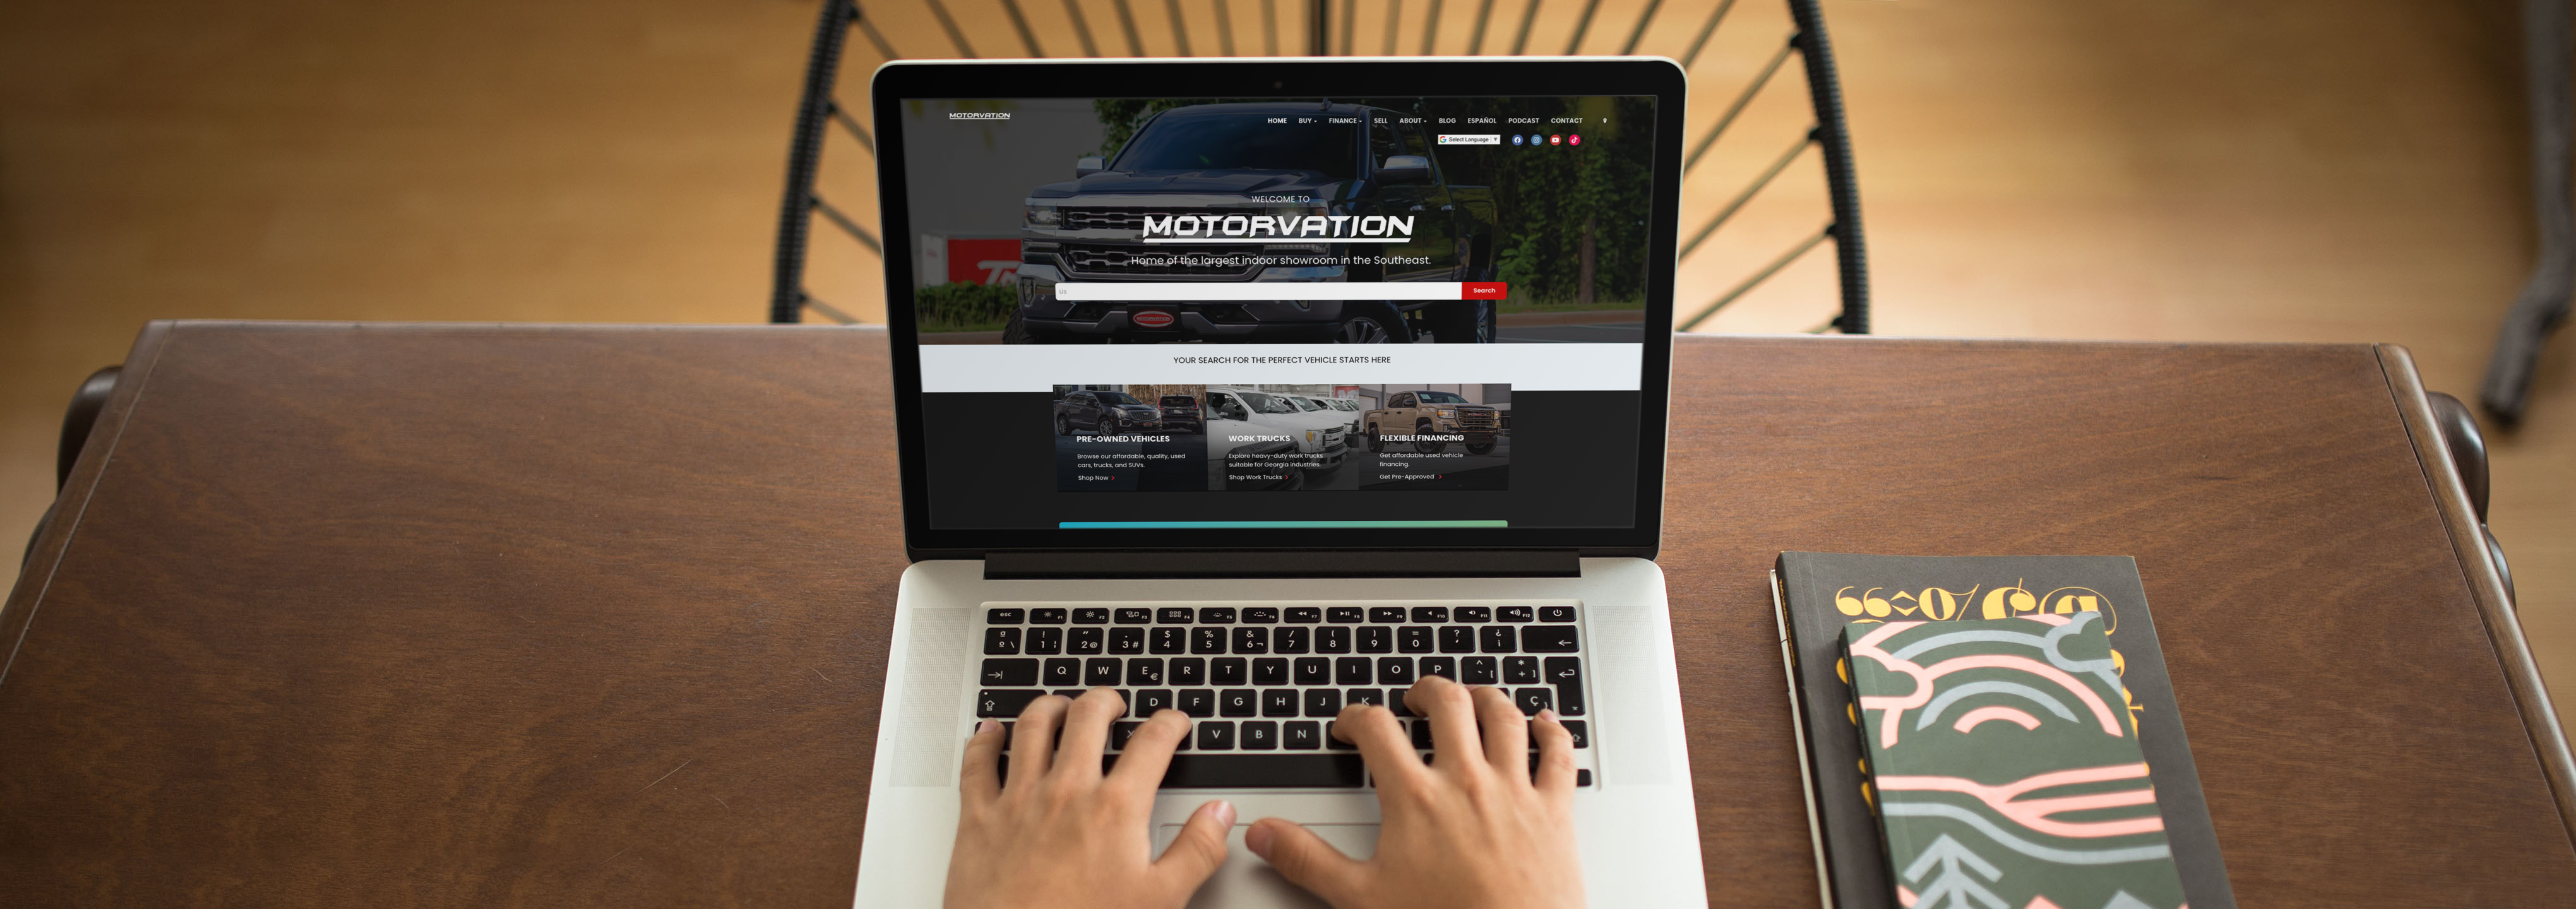 motorvation trucks, car dealer website